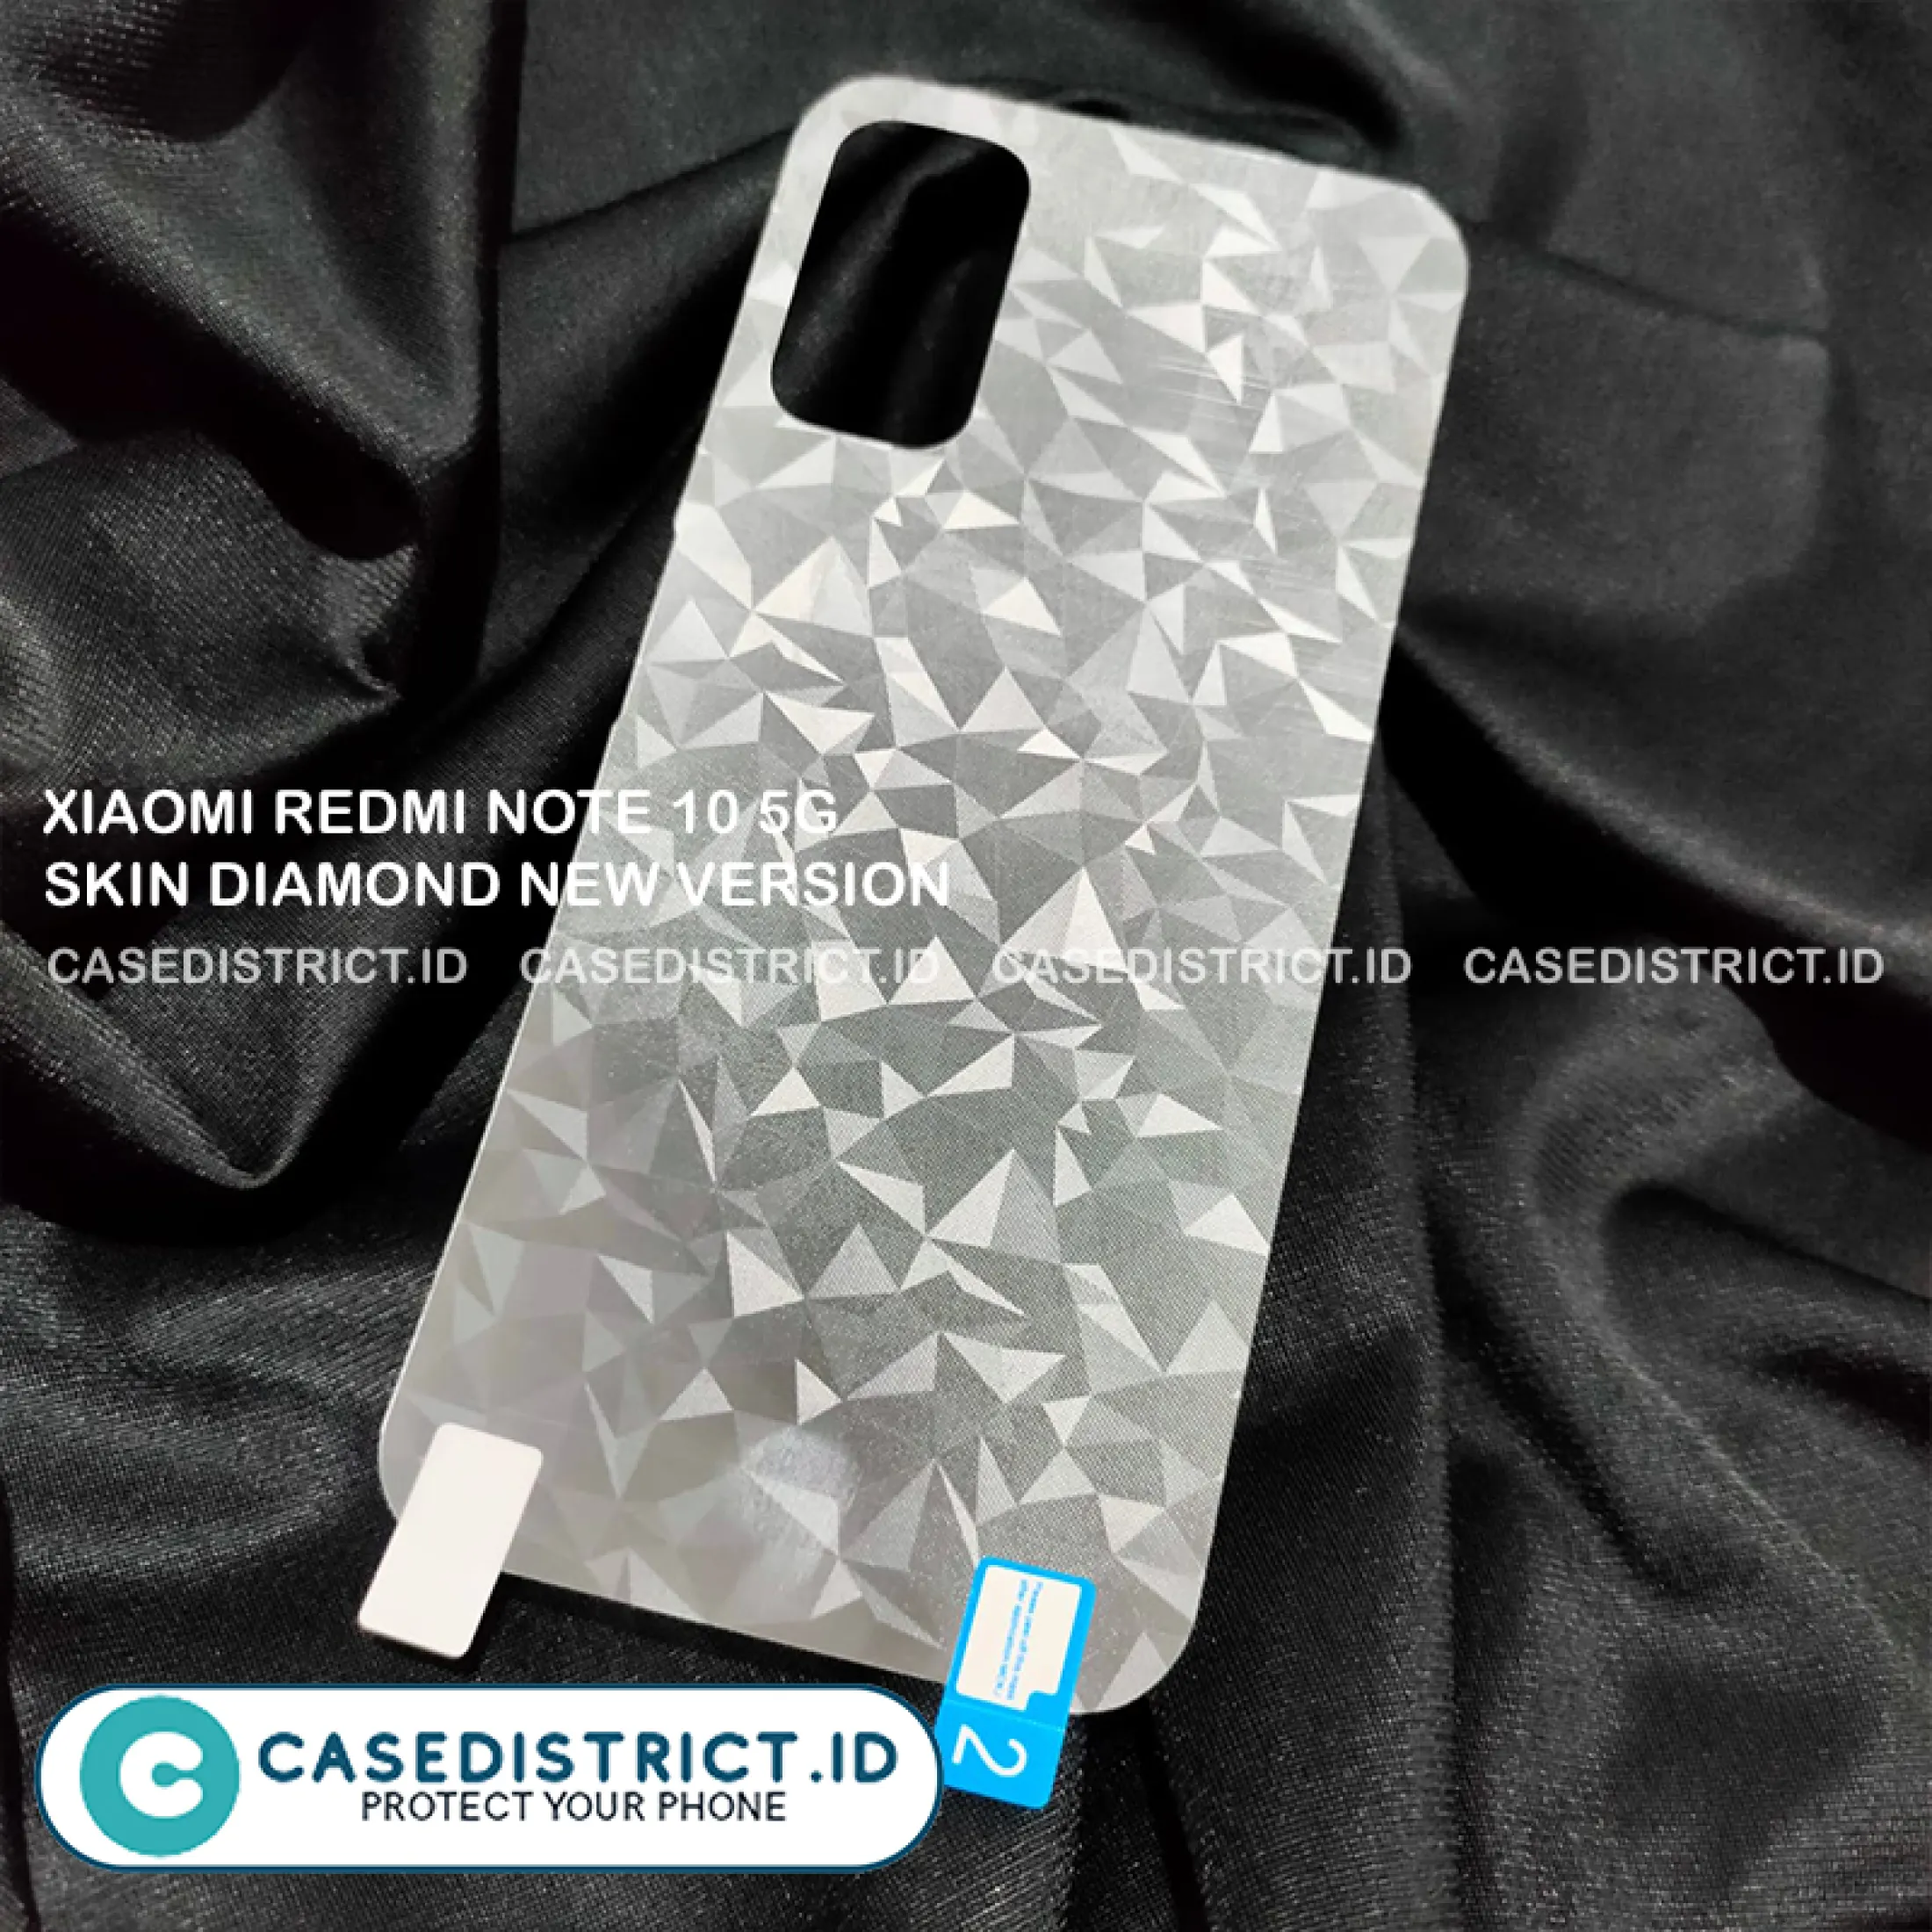 New skin diamond Skin Diamond